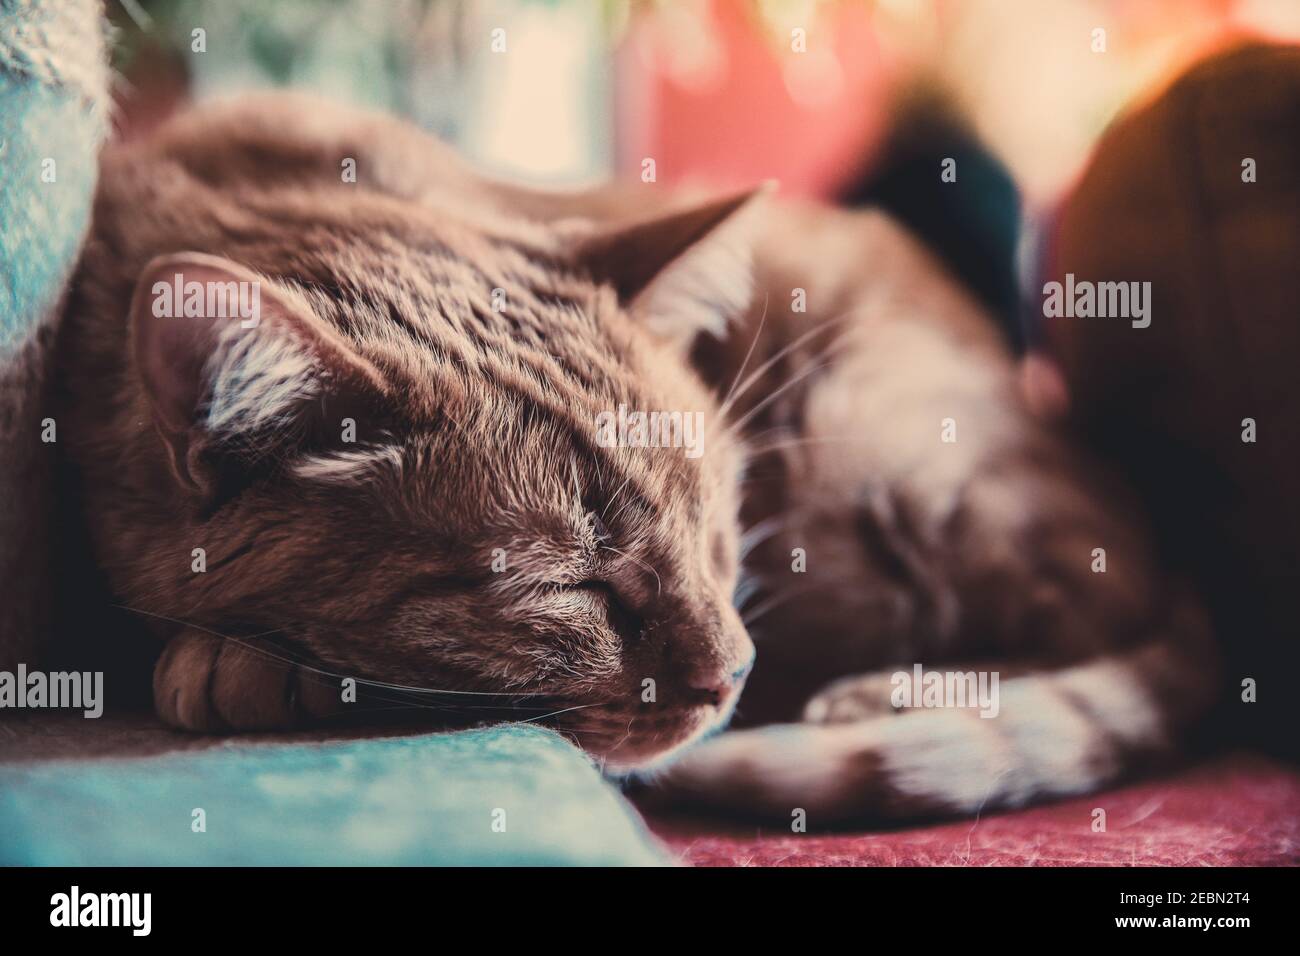 Hermoso gato durmiendo en casa. Primer retrato de una mascota relajándose con los ojos cerrados. Orejas rectas, vibrissas y patas tiernas. Animal con piel roja asl Foto de stock